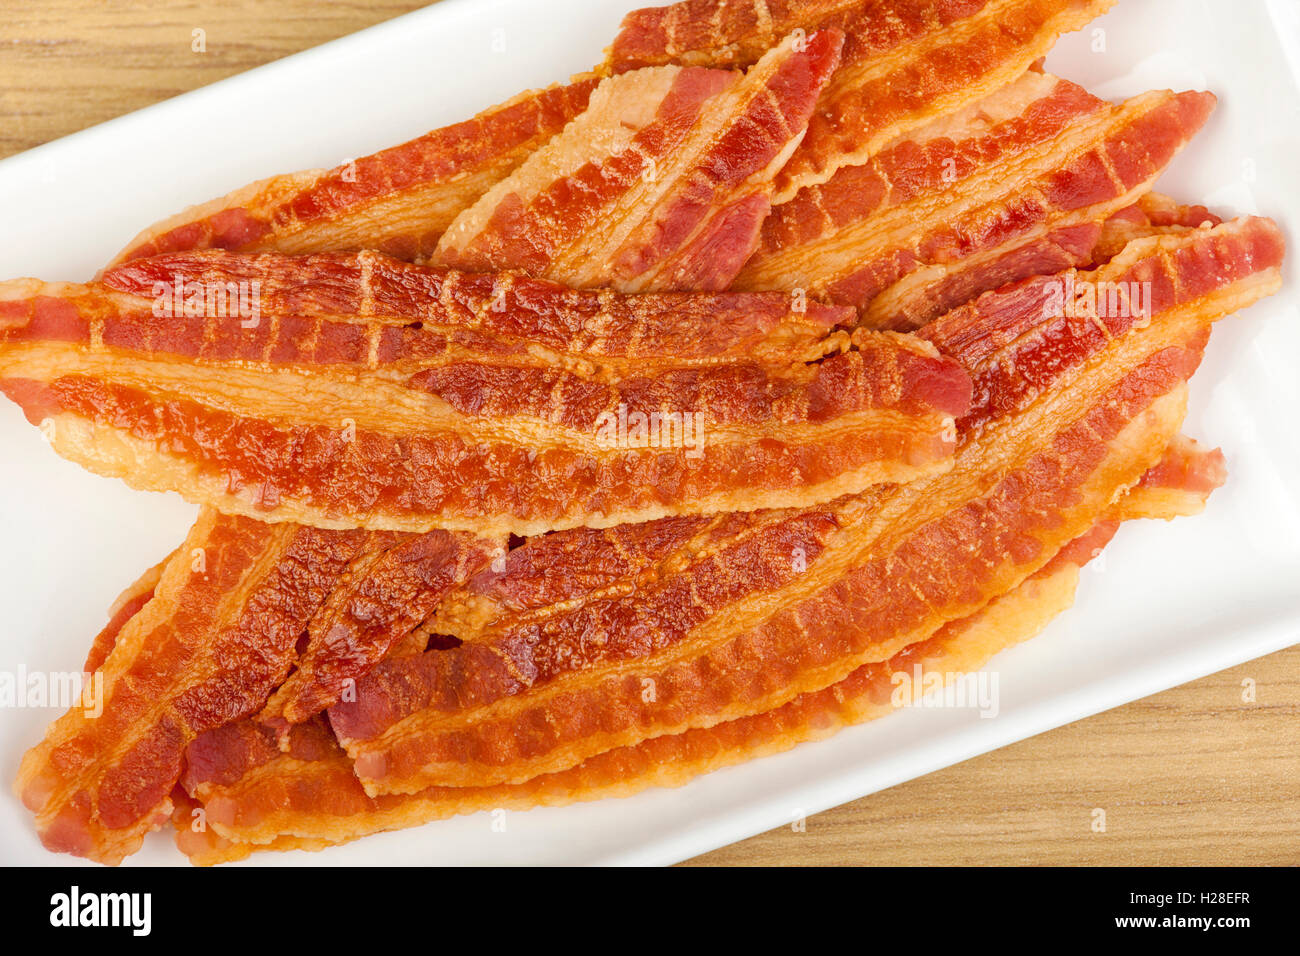 Tranches de bacon croustillant frit frais préparés sur une assiette rectangulaire blanche Banque D'Images